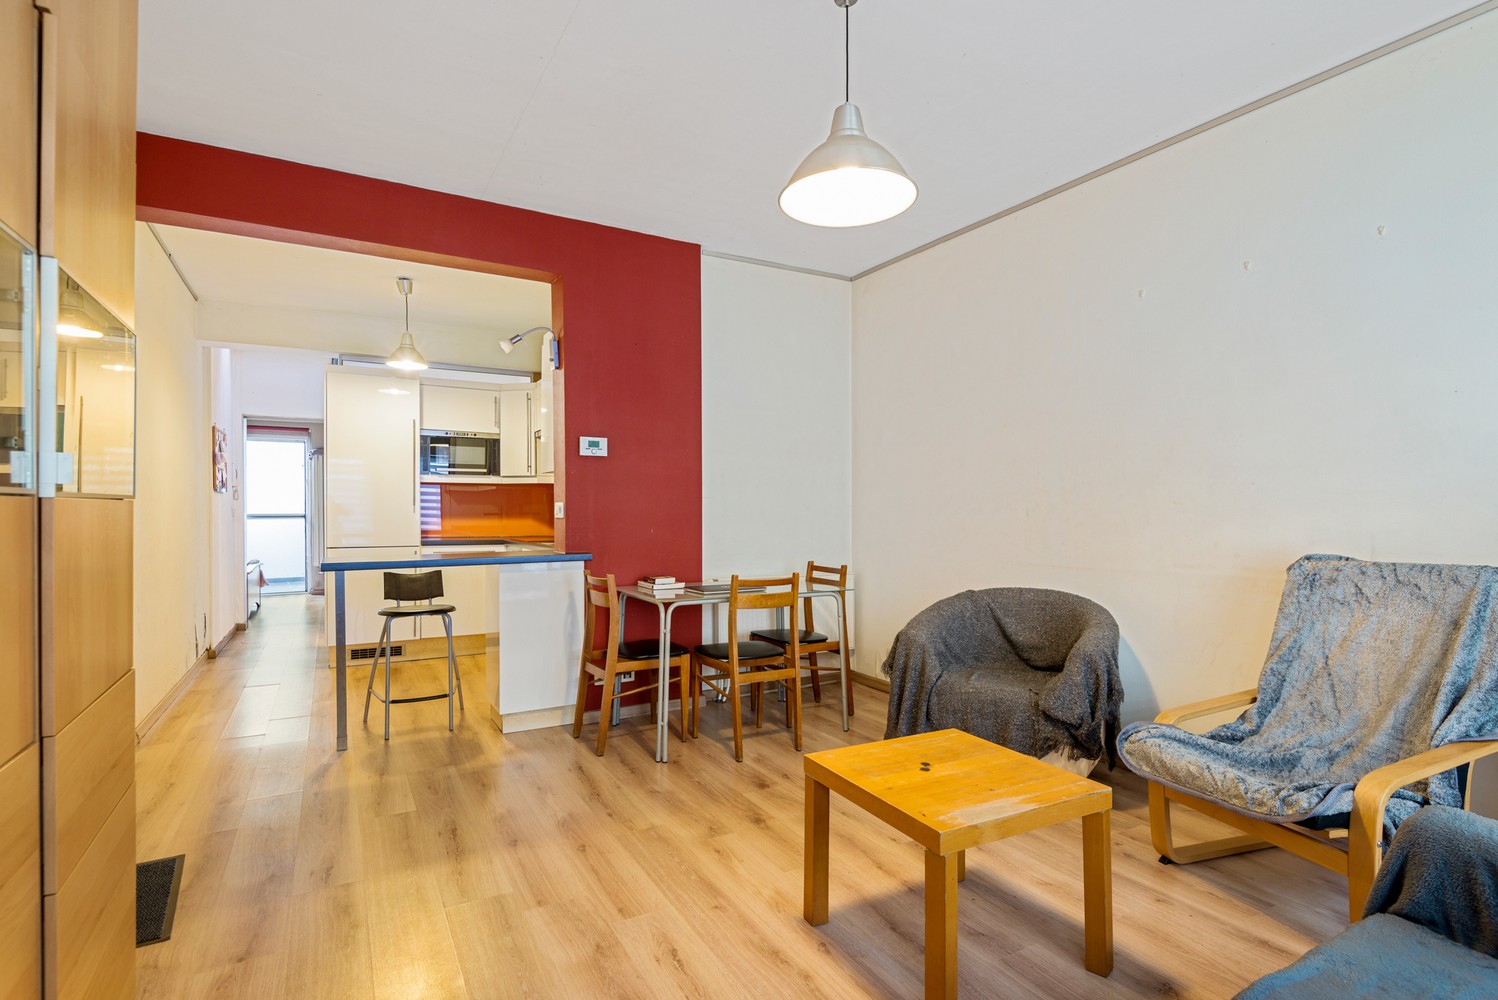 Gelijkvloers appartement met 1 slaapkamer te koop in Mechelen afbeelding 2